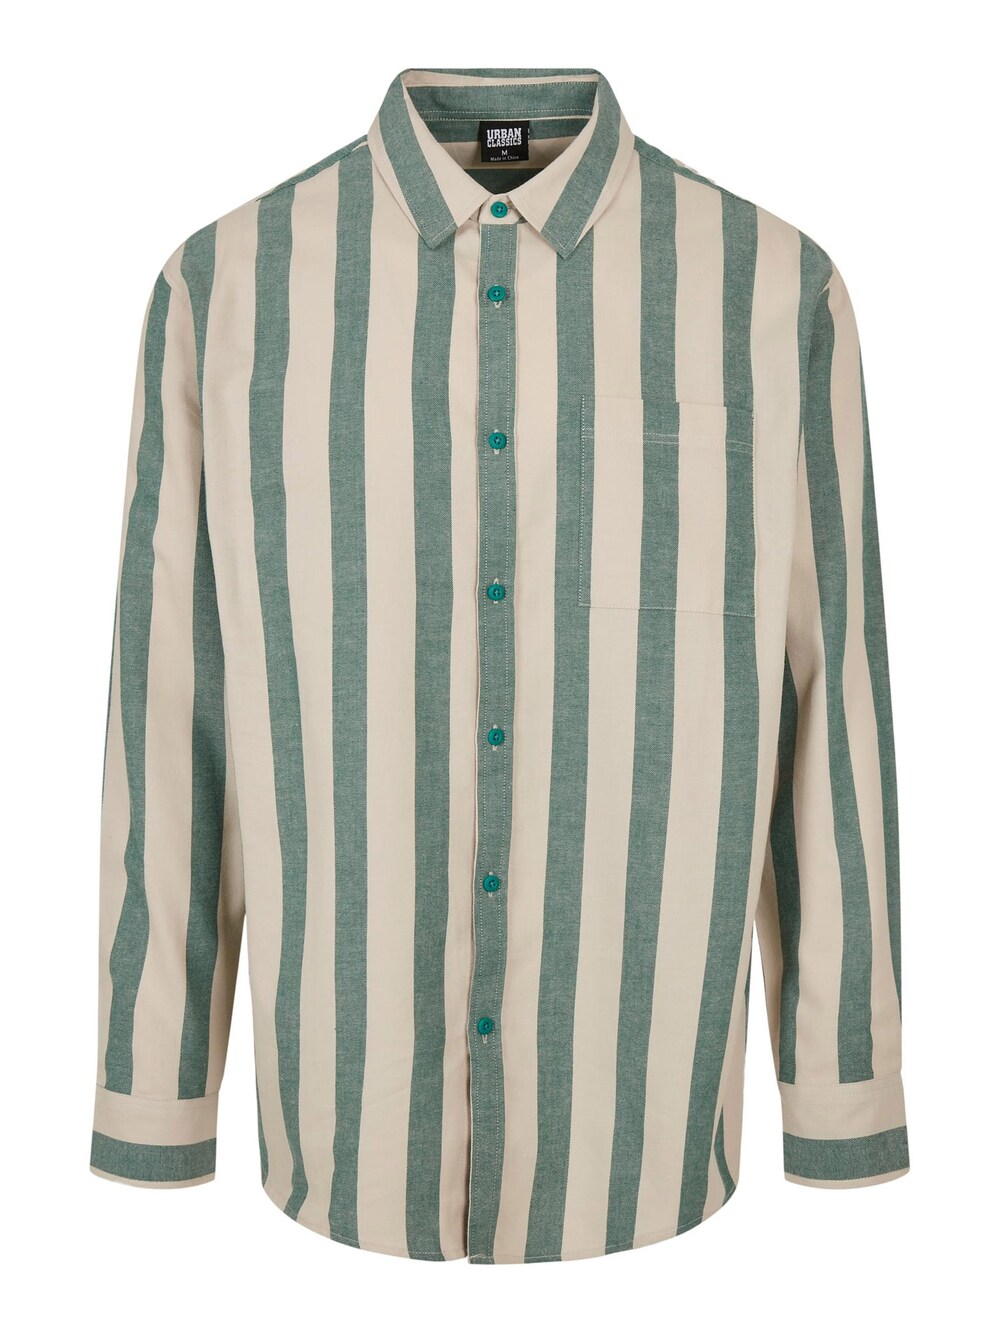 Рубашка на пуговицах стандартного кроя Urban Classics, кремовый/зеленый